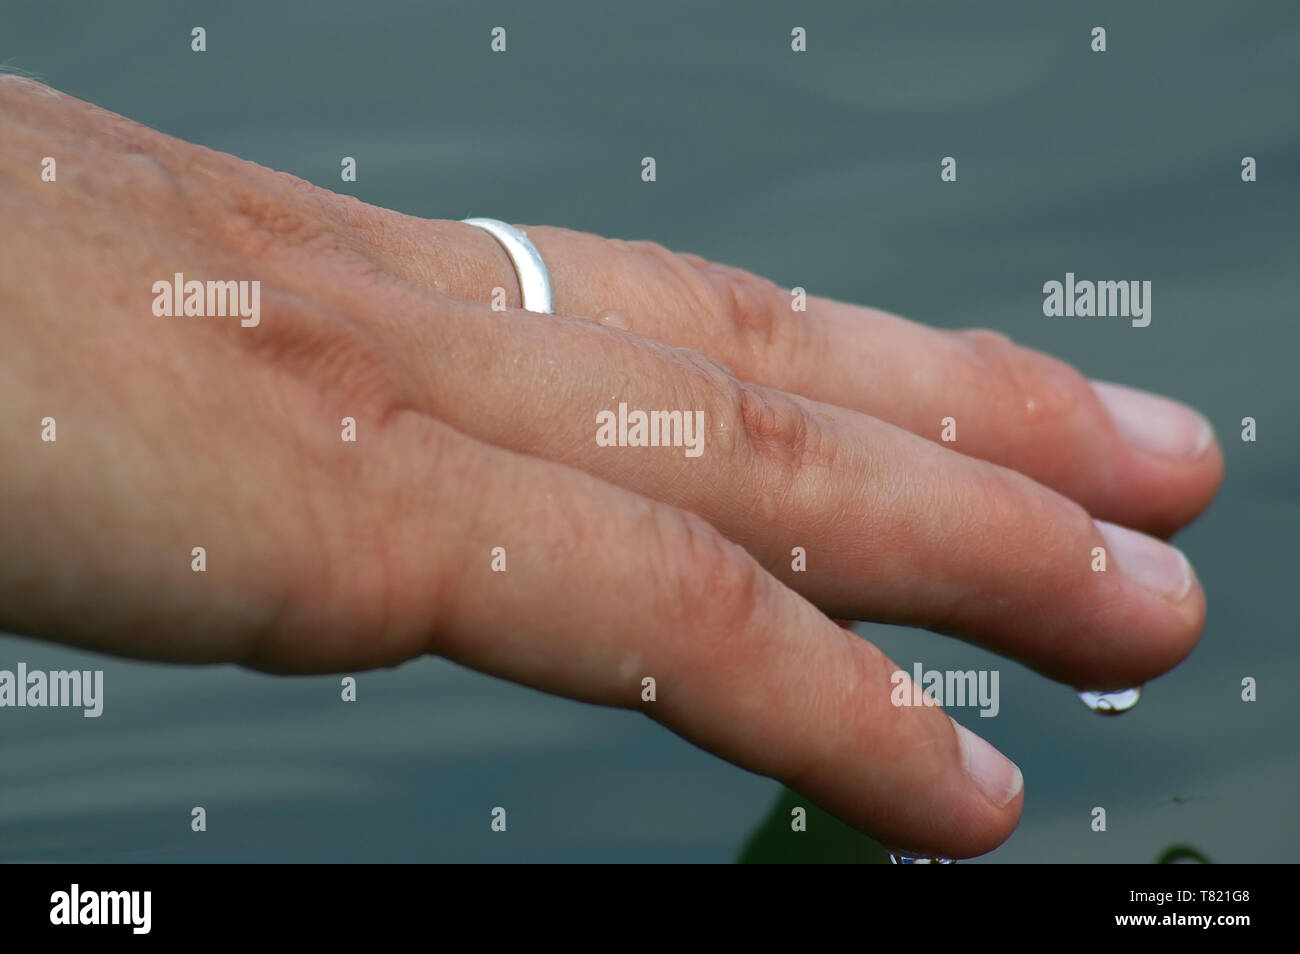 Close-up of a woman's hand touching the smooth surface of a lake. Nahaufnahme der Hand einer Frau, welche die glatte Oberfläche von einem See berührt. Stock Photo